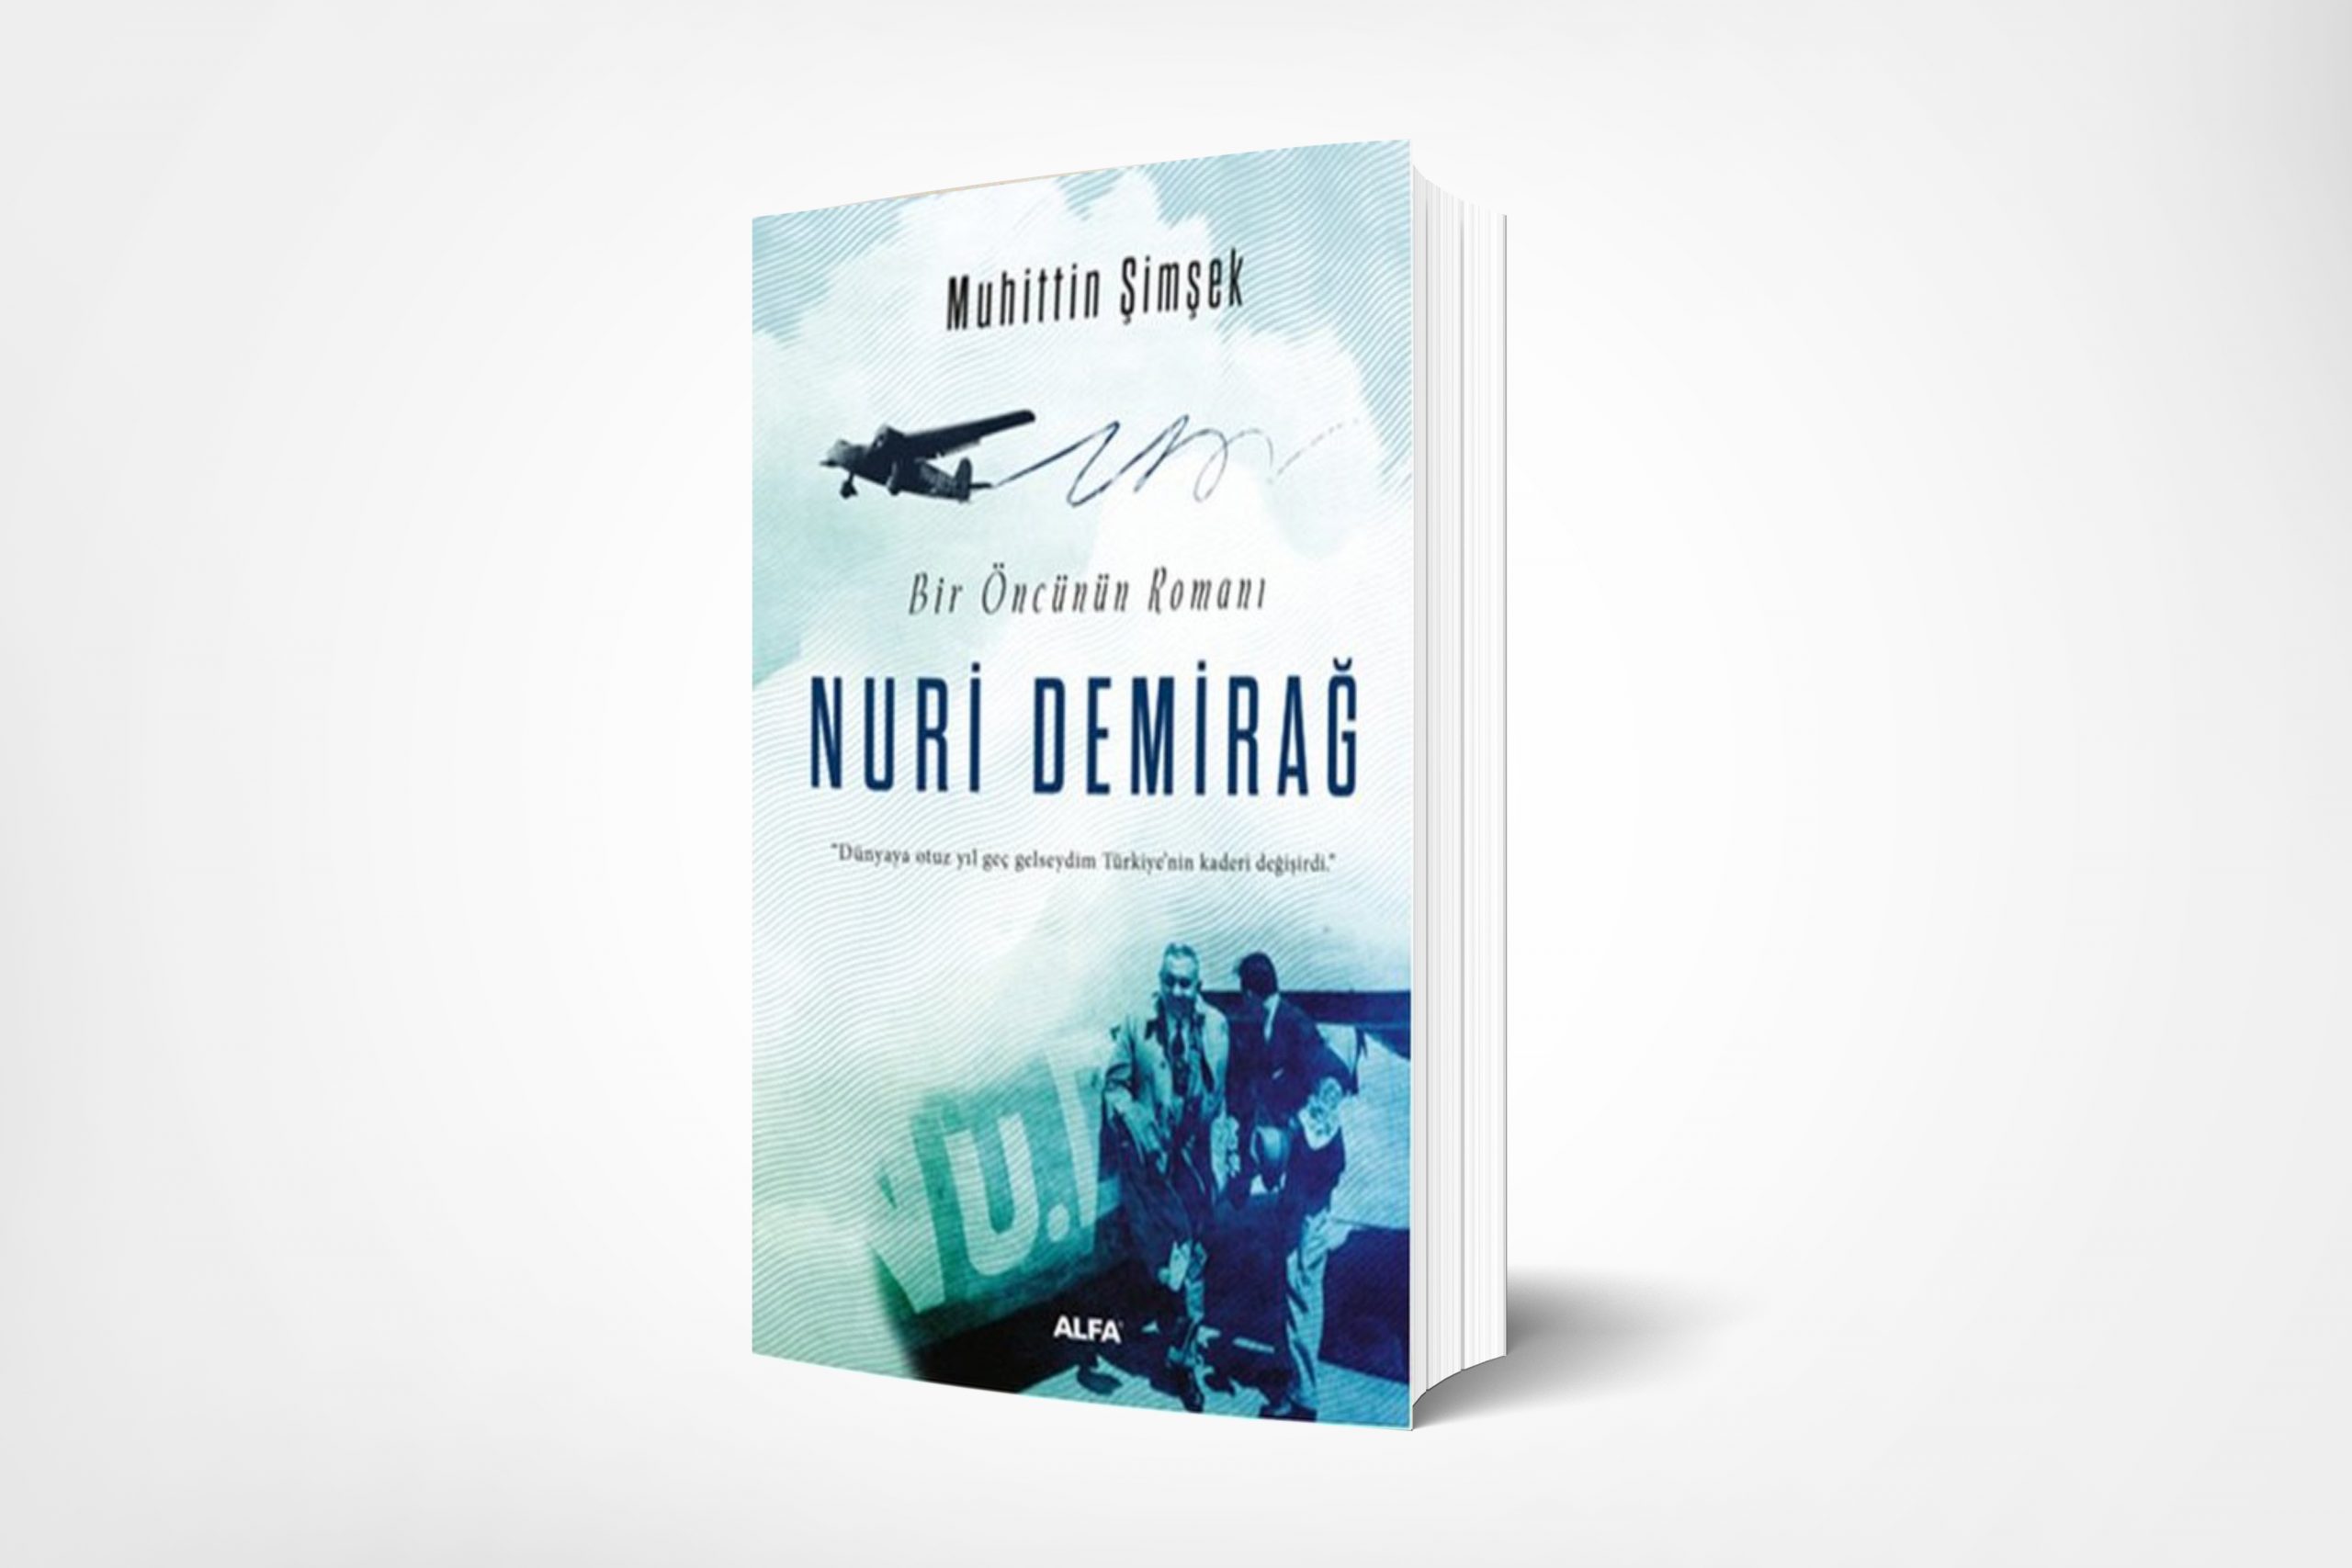 Bir Öncünün Romanı Nuri Demirağ (The Novel of a Pioneer Nuri Demirağ)